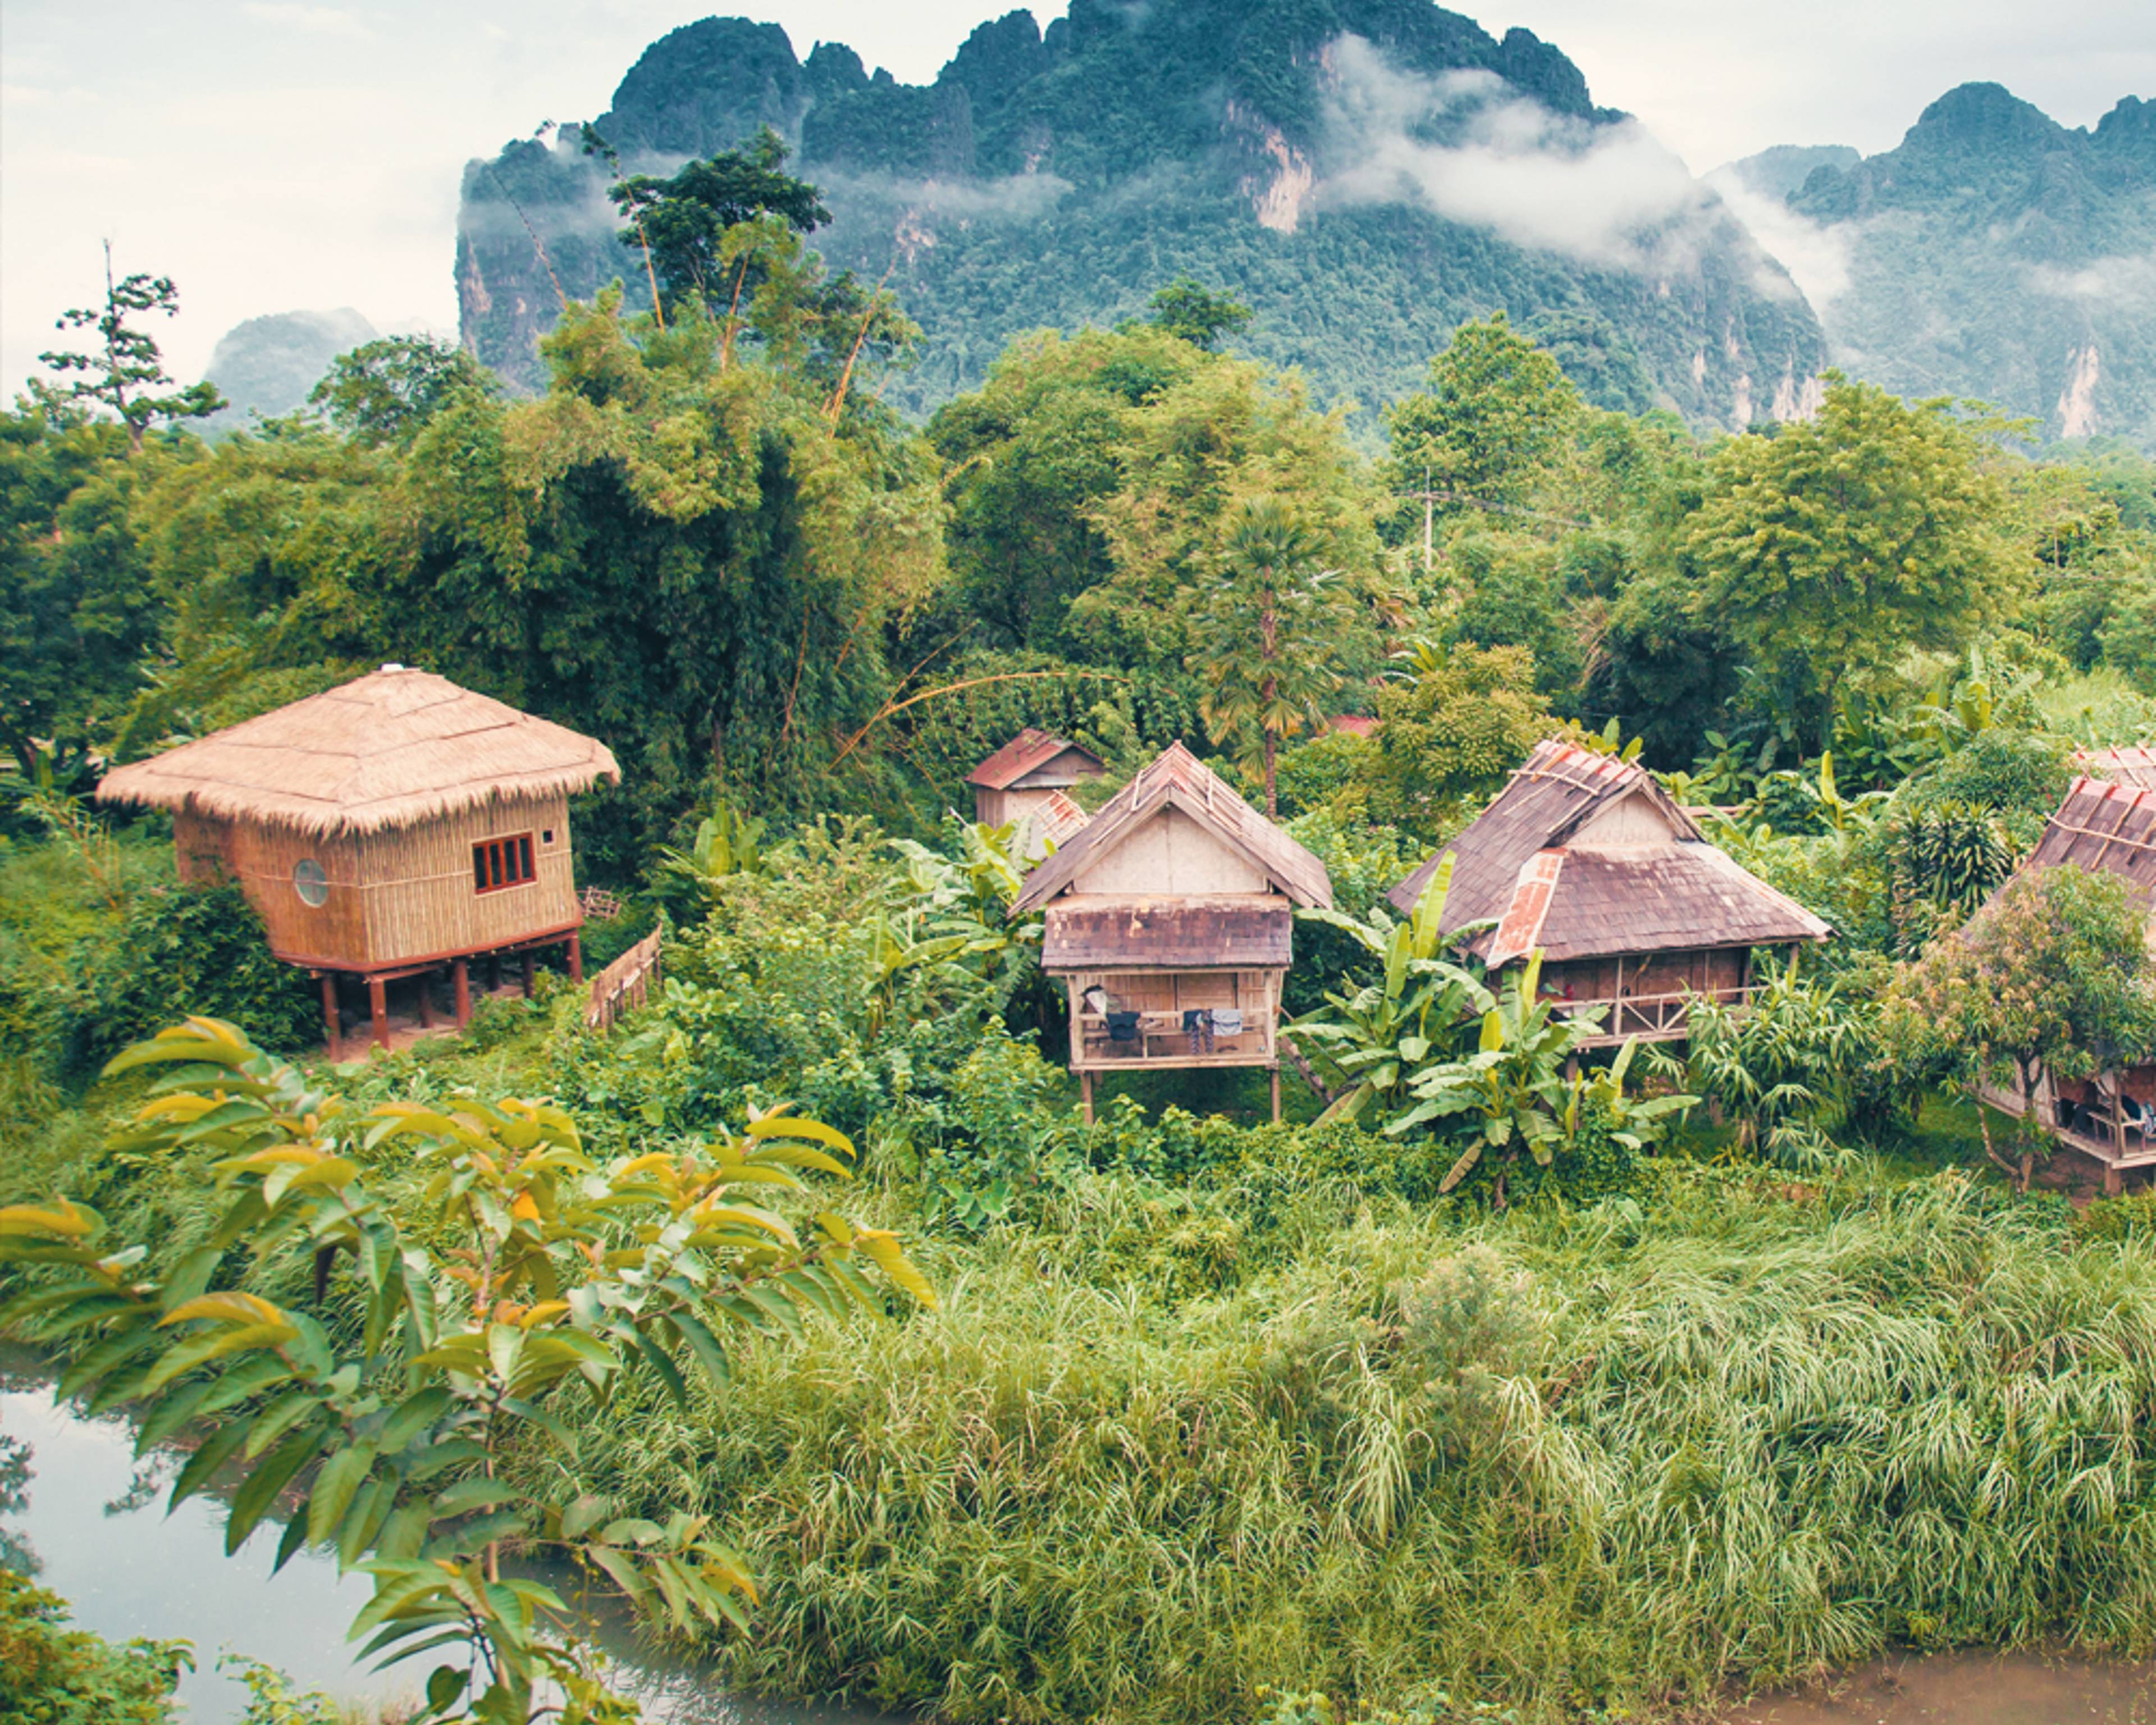 Crea il tuo viaggio in Laos in inverno, 100% su misura